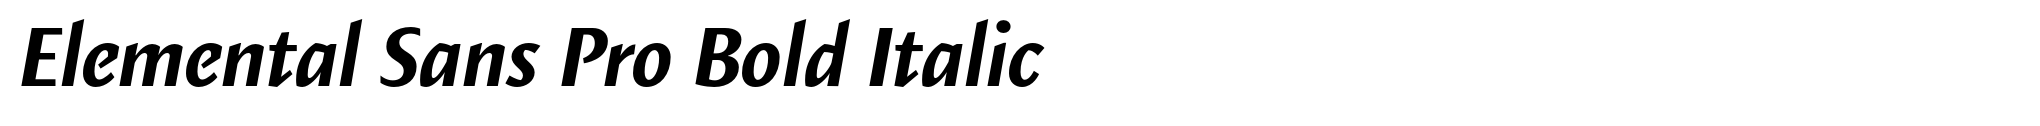 Elemental Sans Pro Bold Italic image